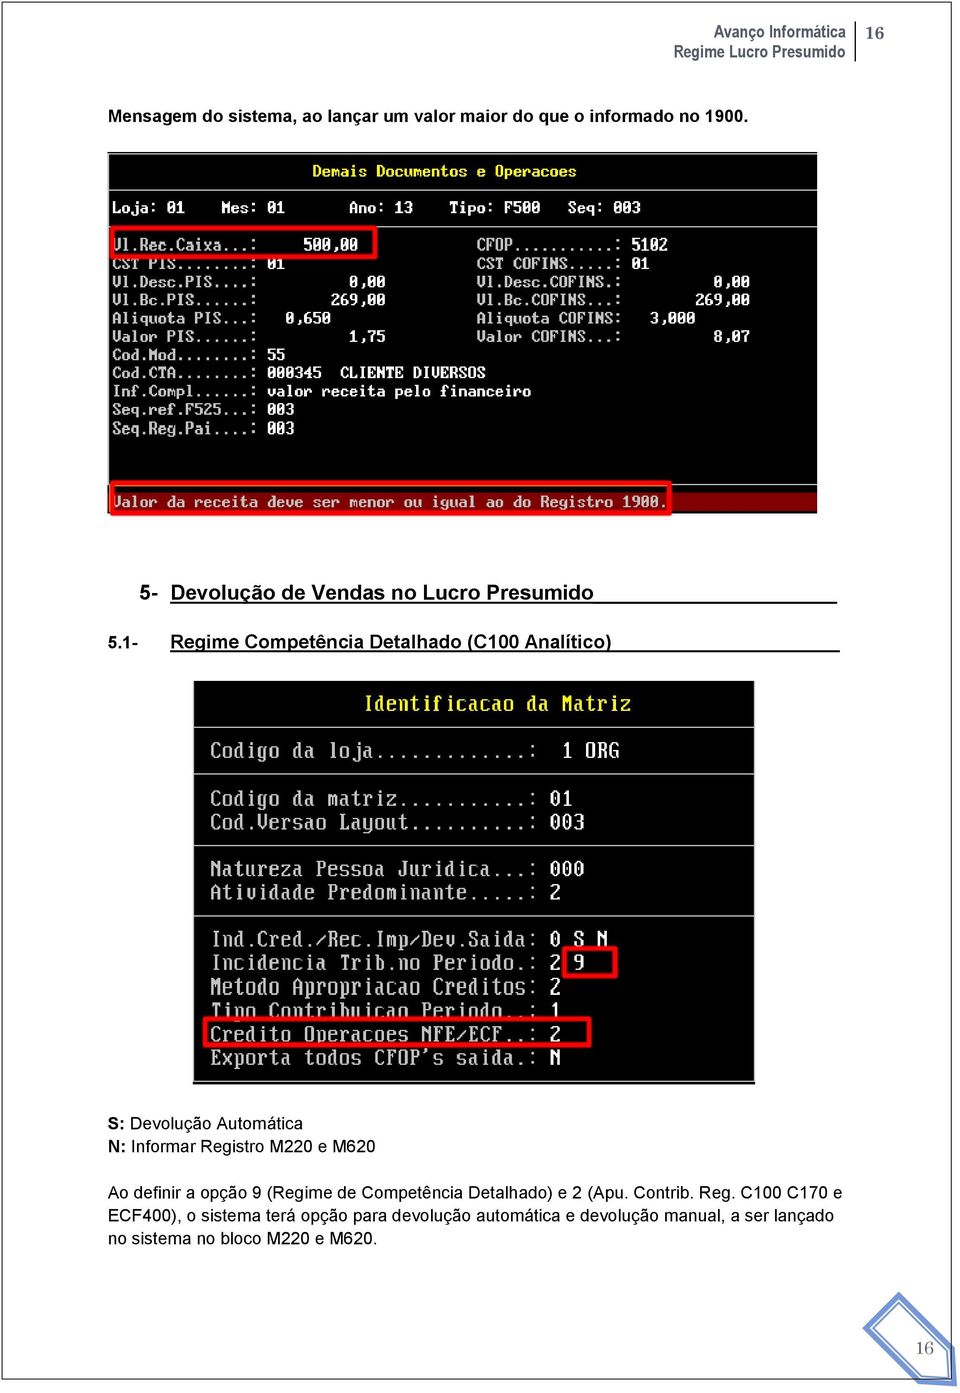 1- Regime Competência Detalhado (C100 Analítico) S: Devolução Automática N: Informar Registro M220 e M620 Ao